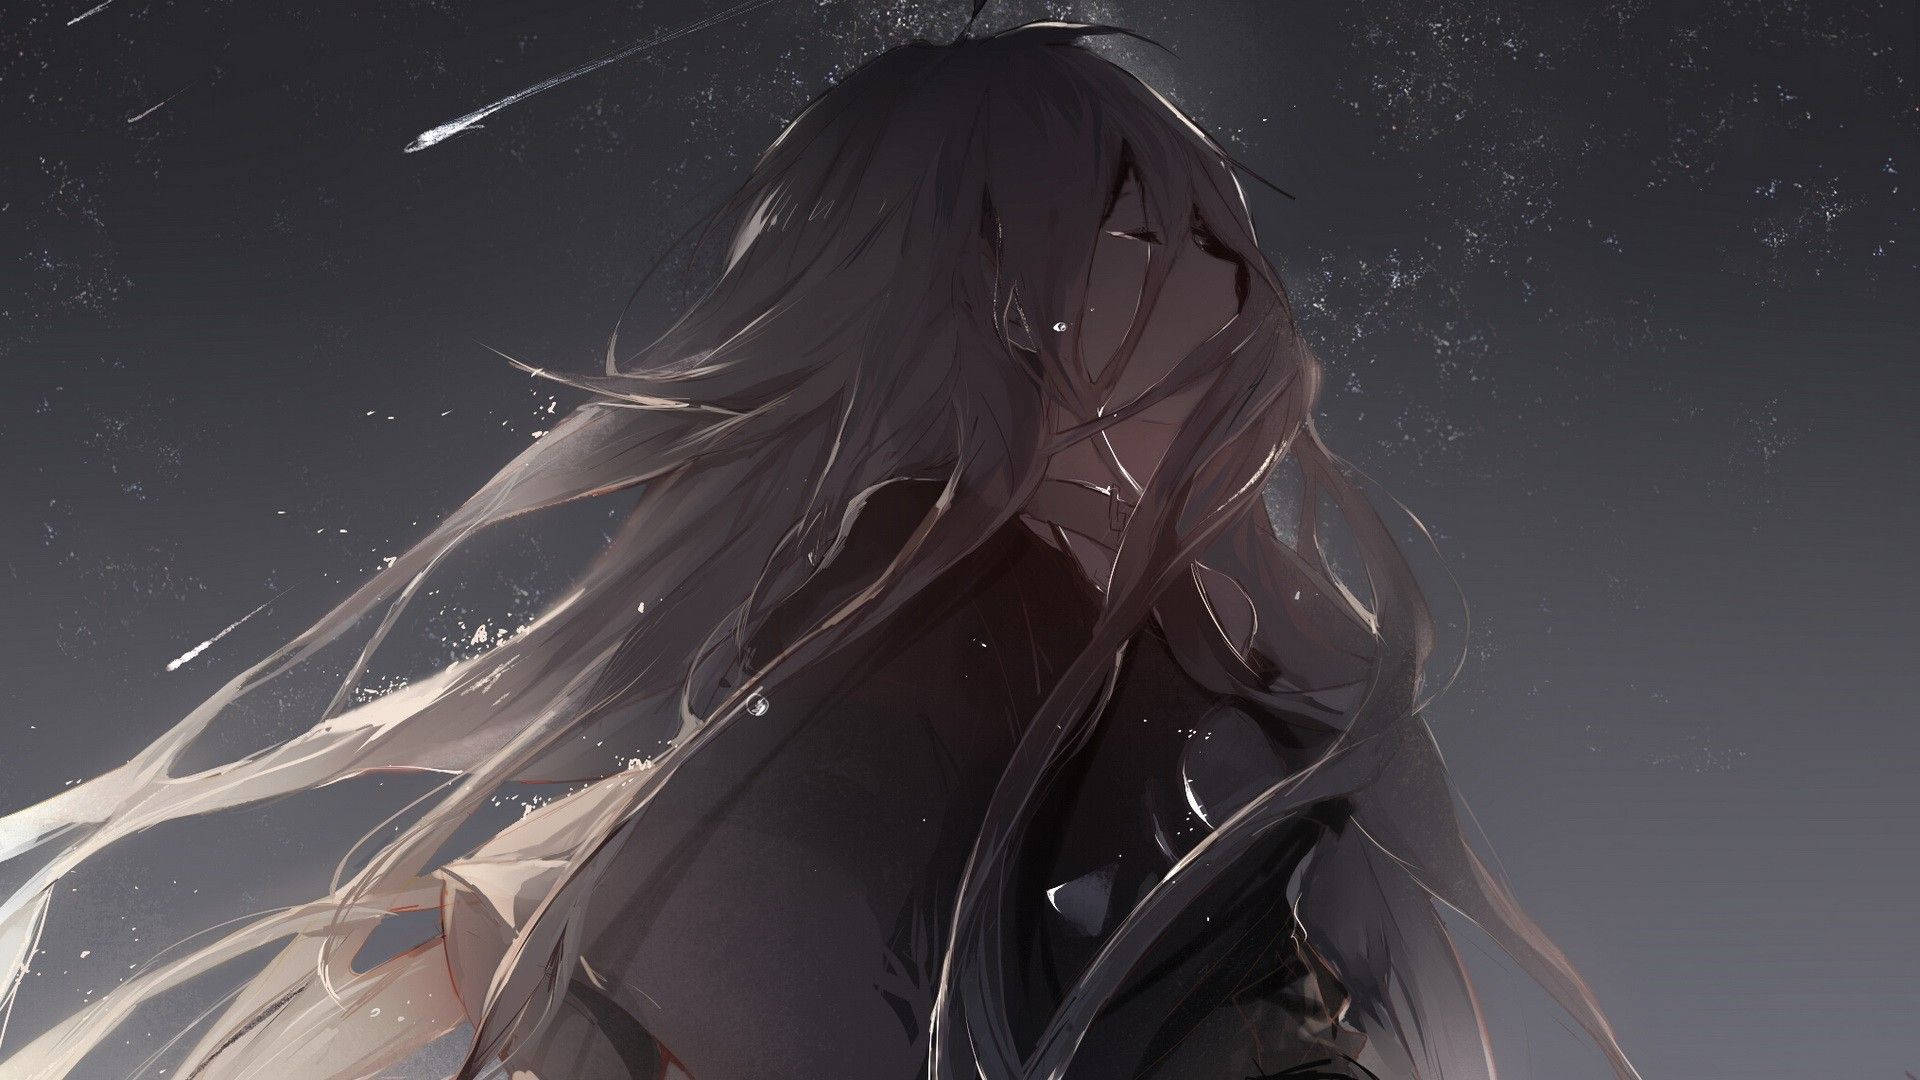 Long-haired Depressed Anime Girl Wallpaper